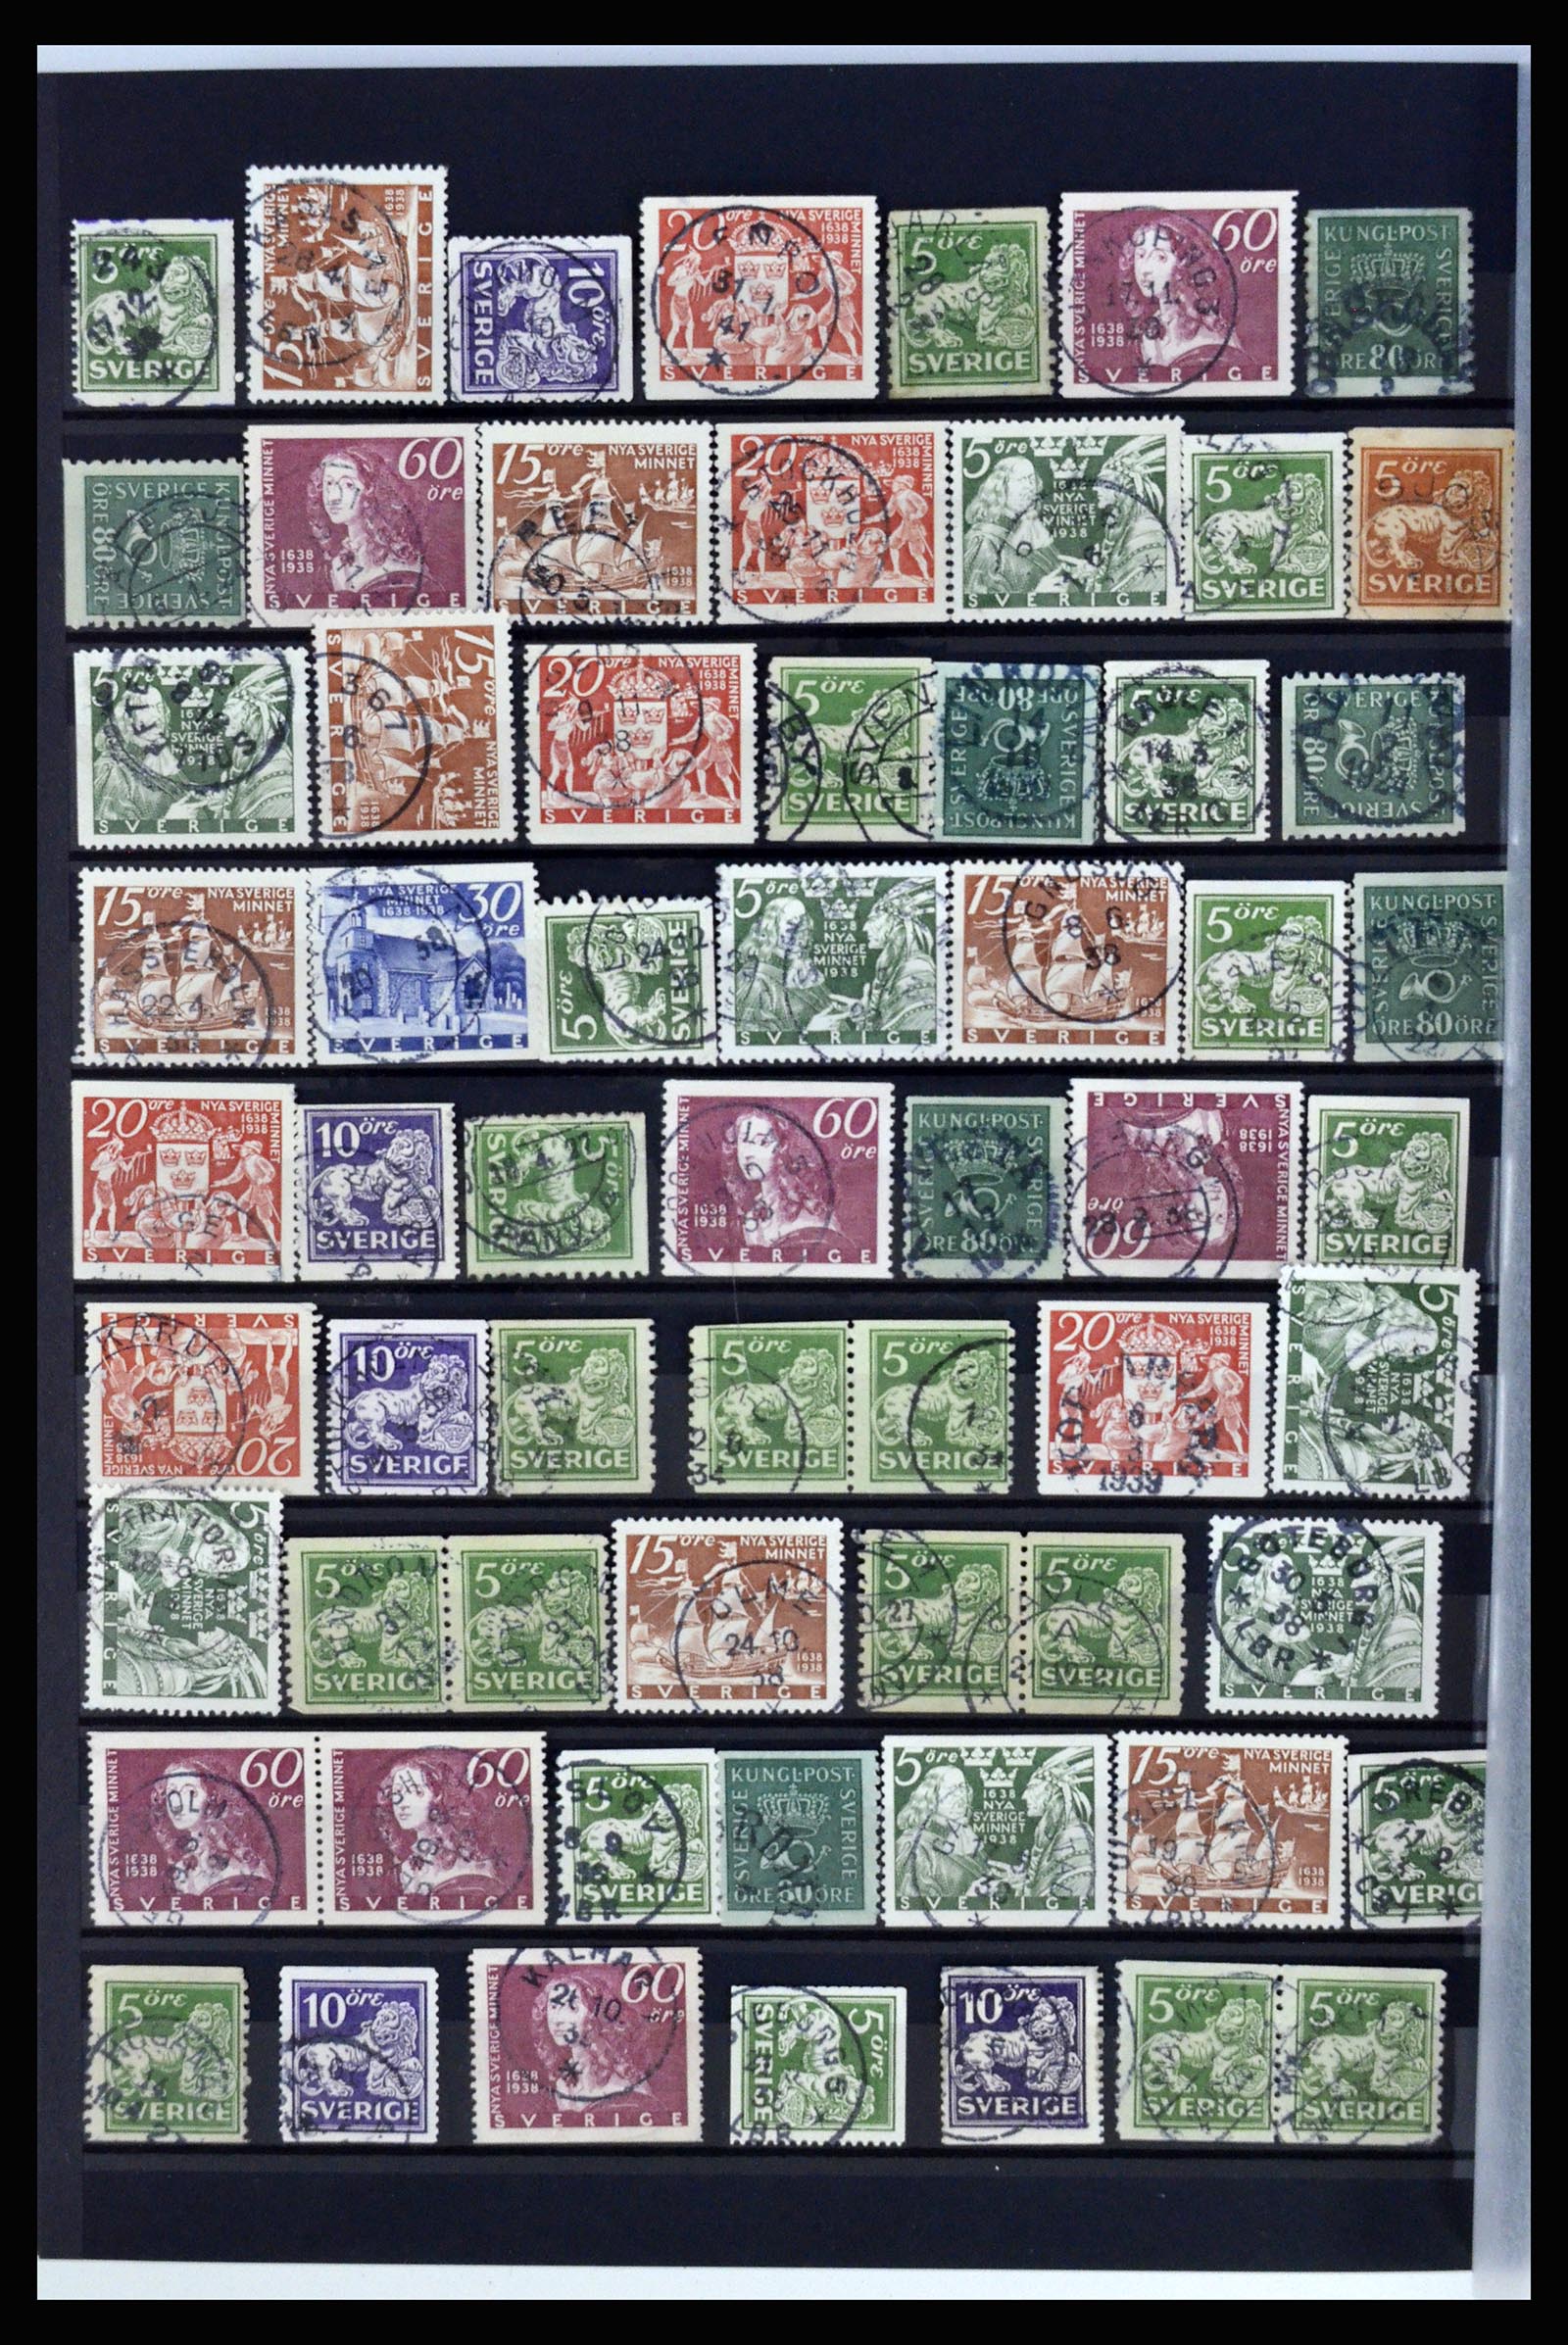 36316 106 - Postzegelverzameling 36316 Zweden stempels 1920-1938.